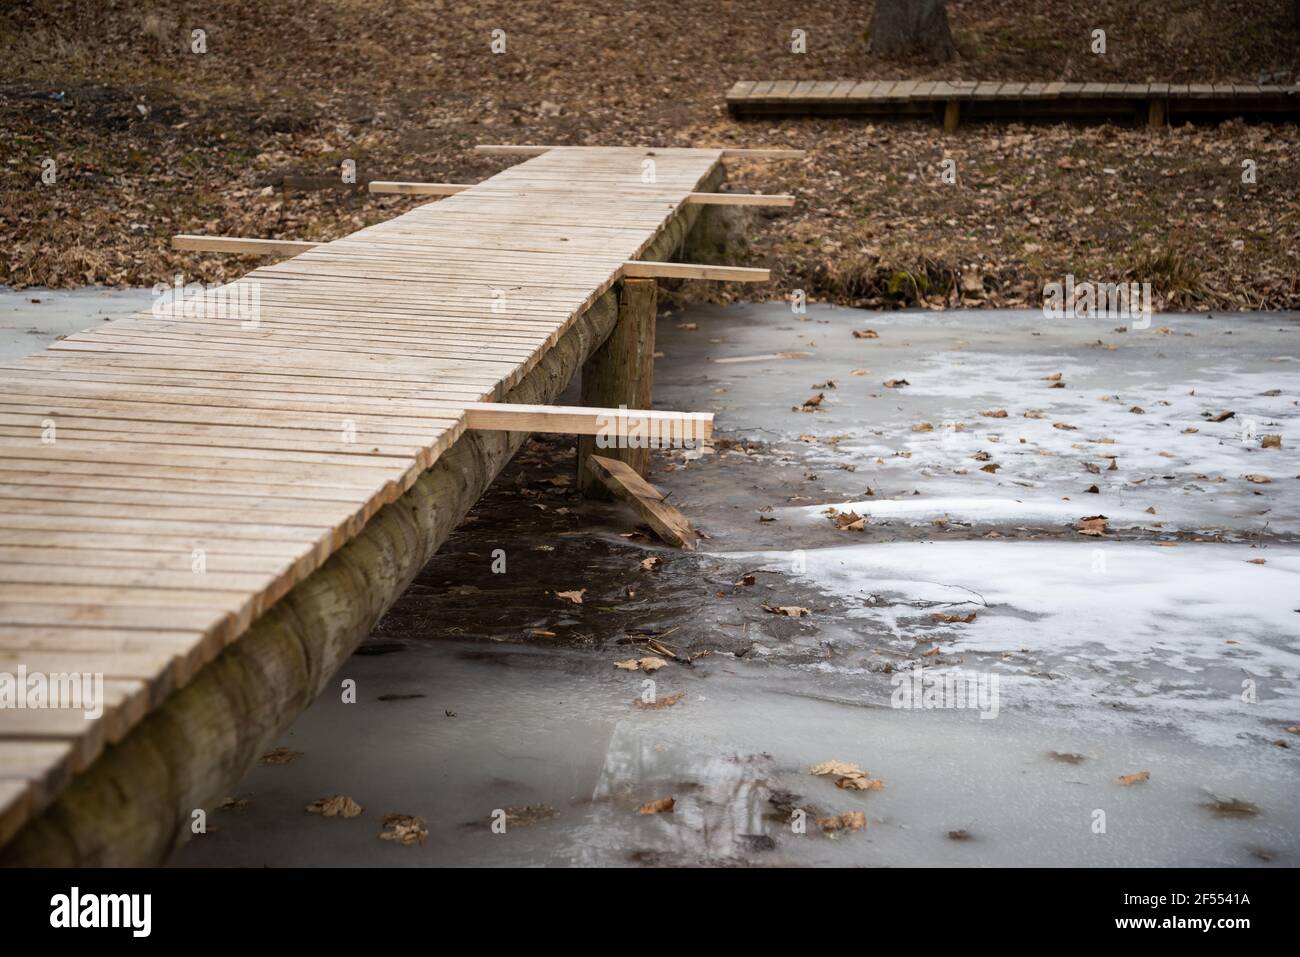 ponte pedonale in legno fatto di tavole di legno su un fiume ghiacciato in primavera. Il ponte è ancora in costruzione senza installato prototiv Foto Stock